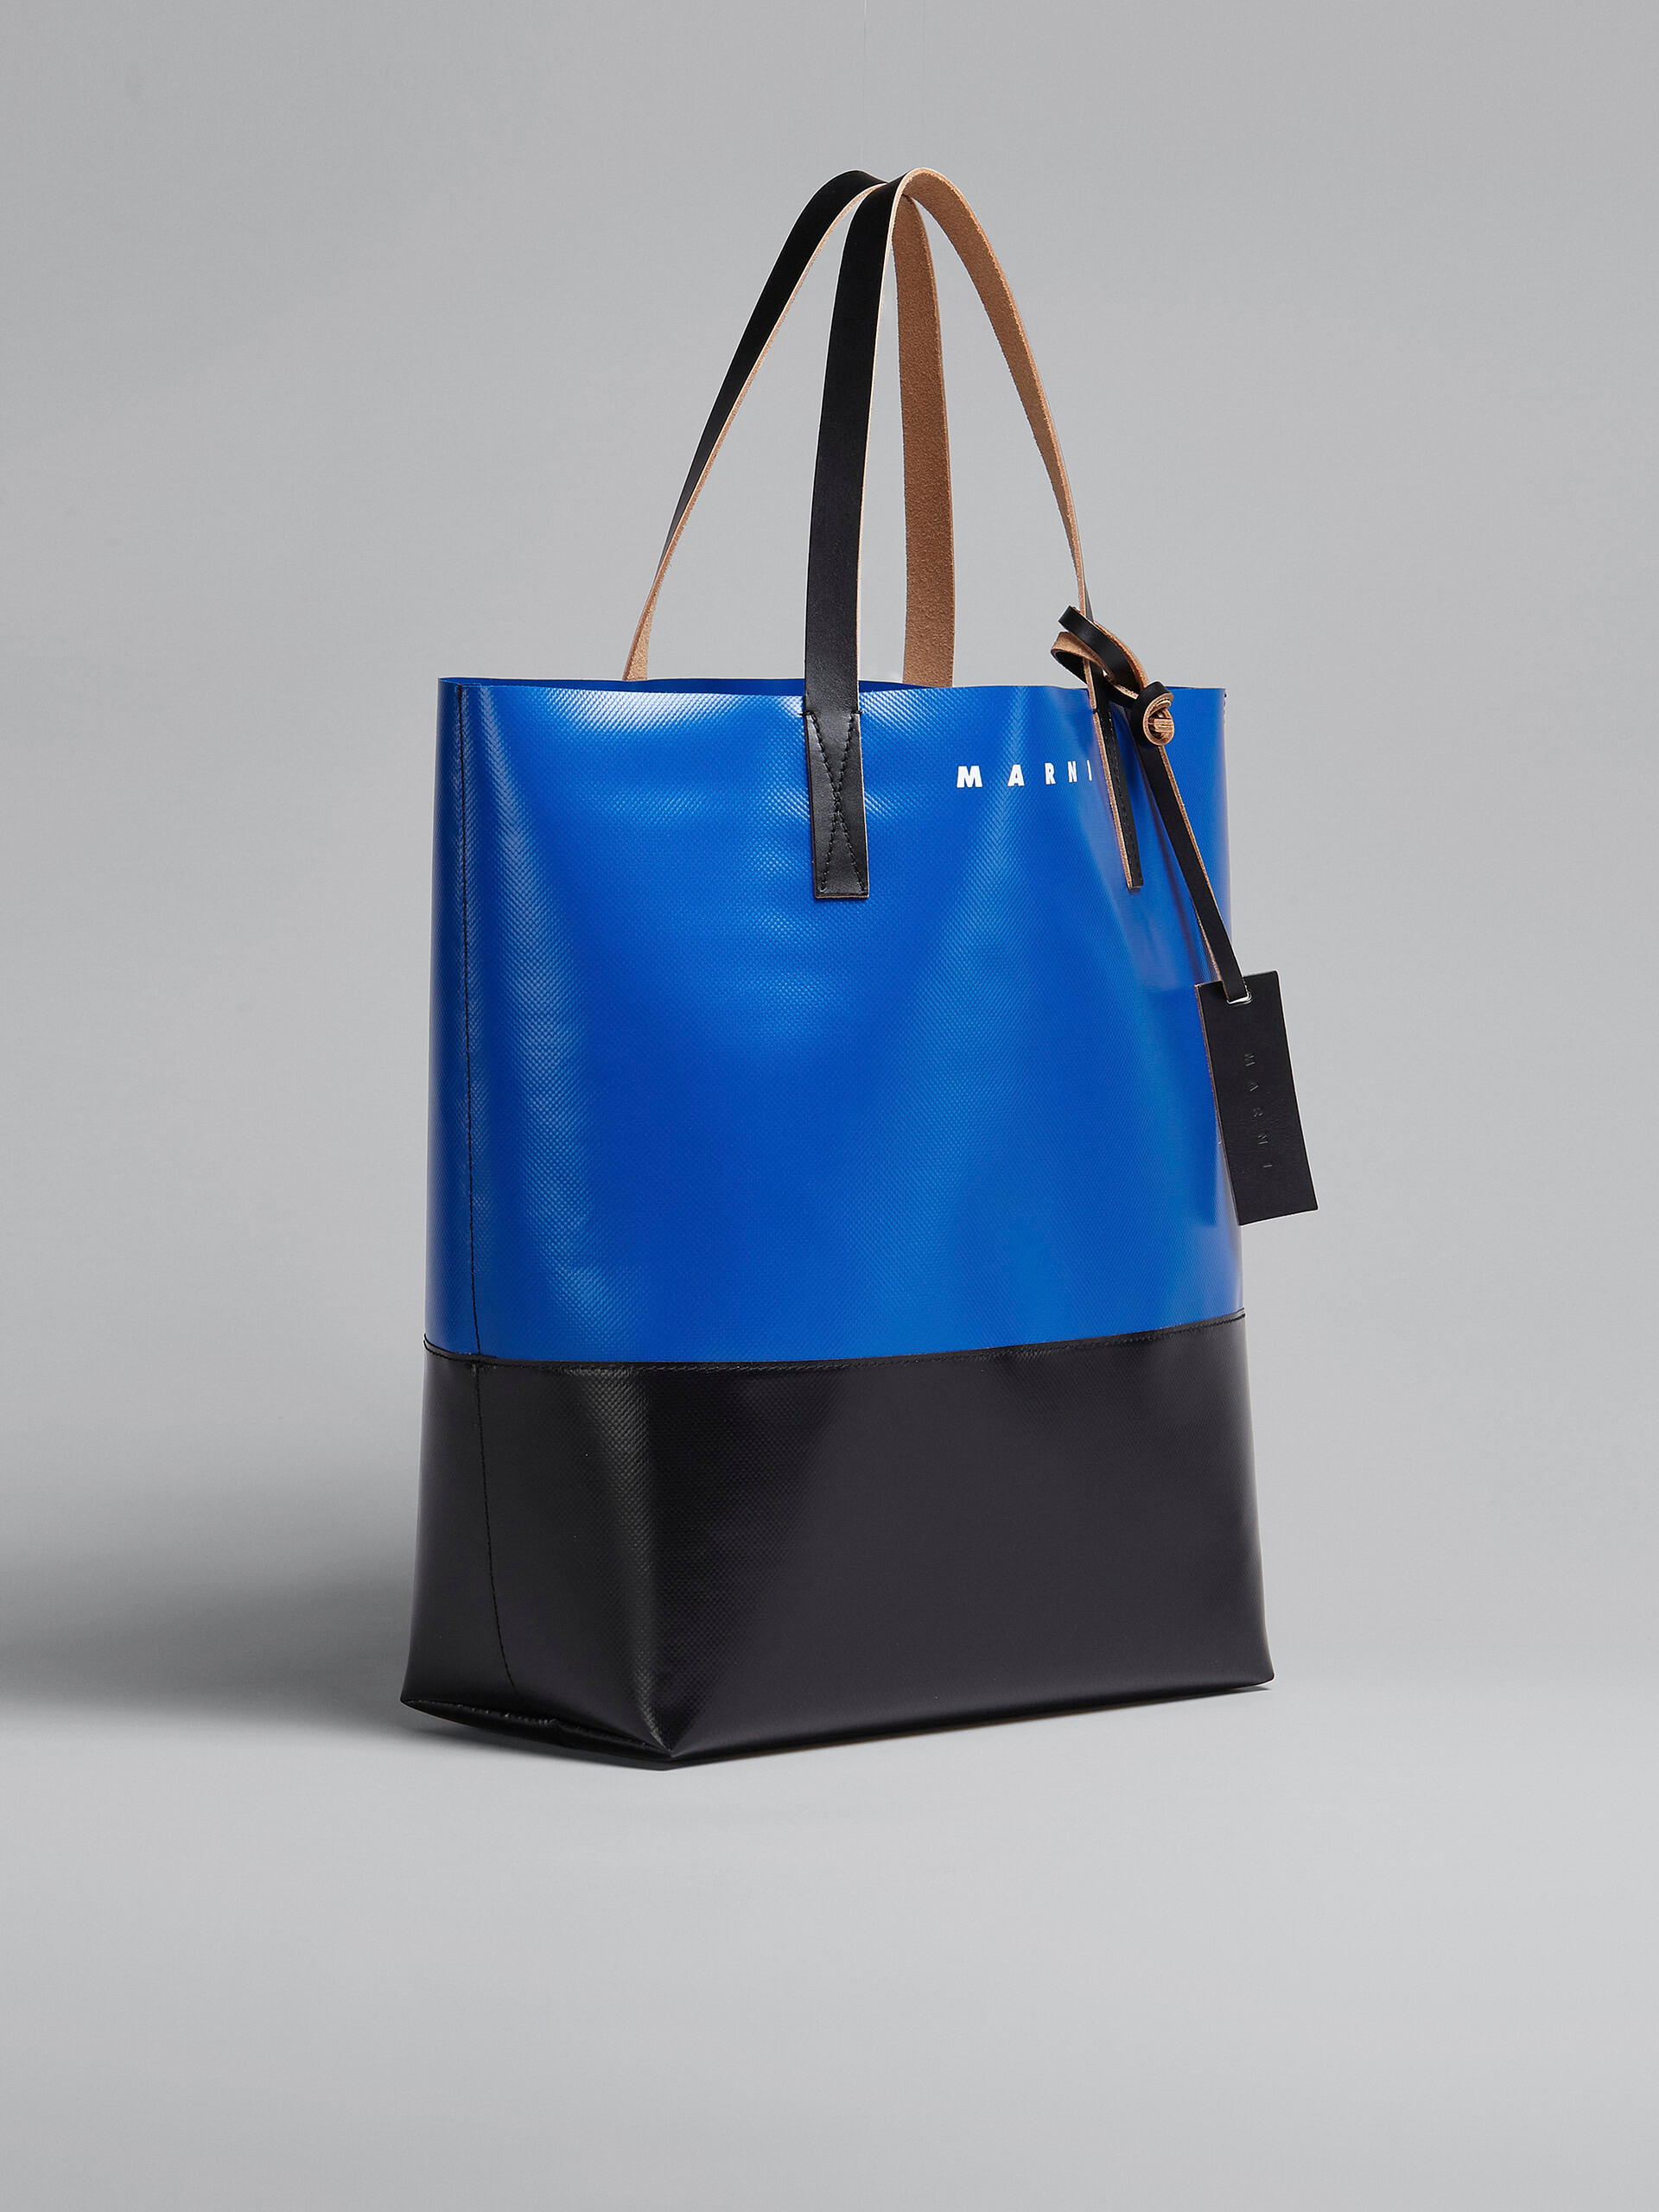 MARNI マルニ PVCショッピングバッグ ブラック&ブルー - www